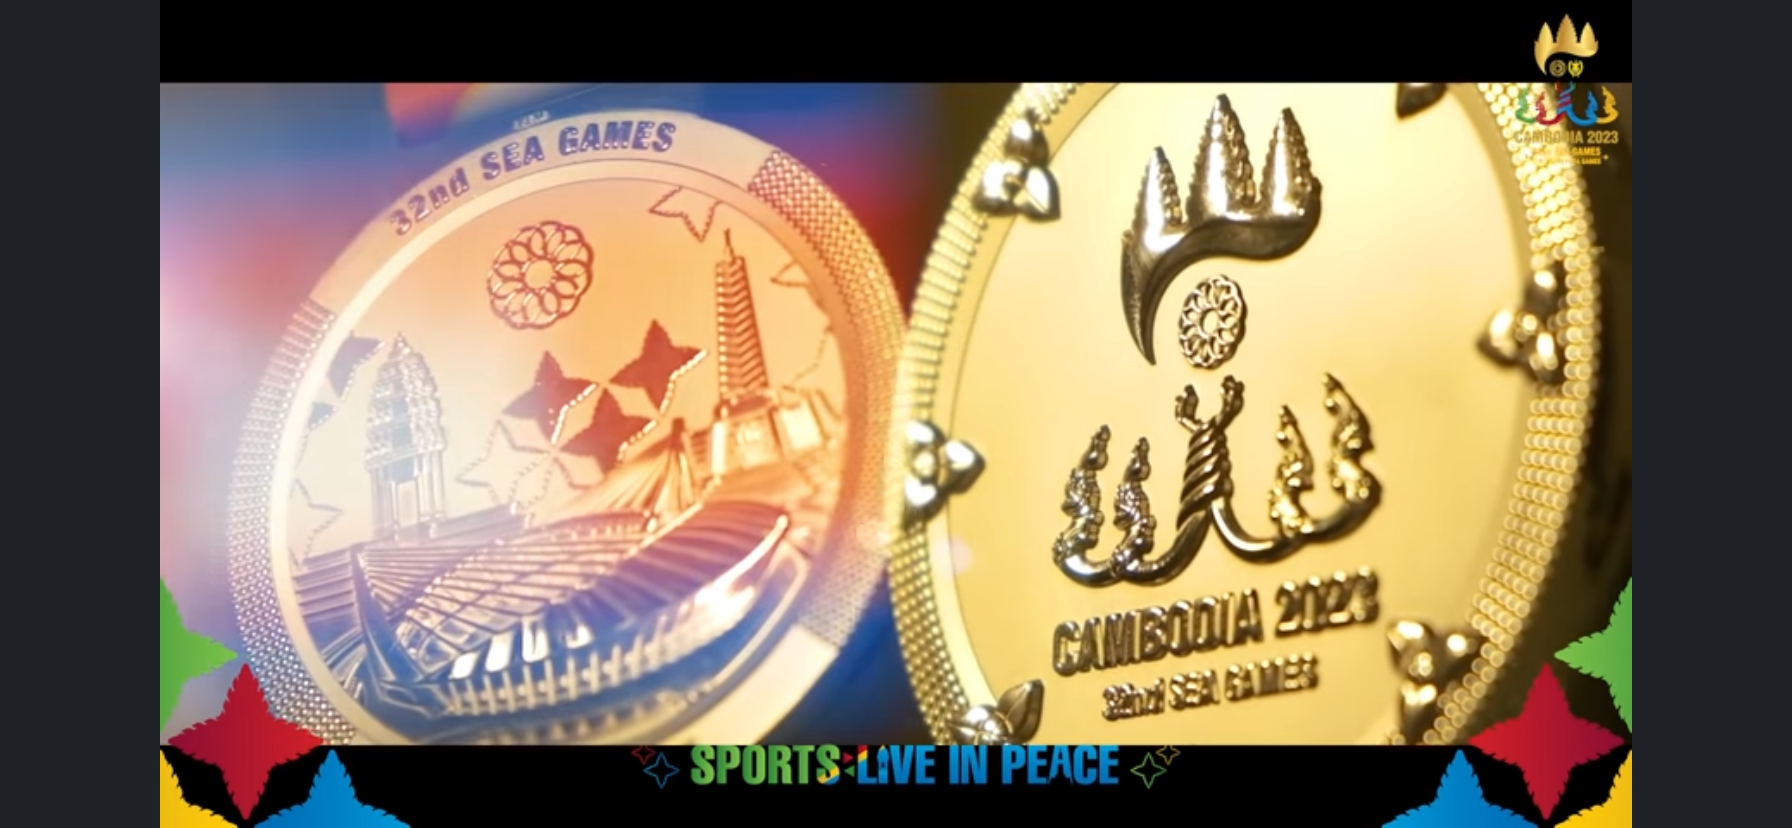 Hình ảnh tấm huy chương vàng SEA Games được công bố trên trang Facebook : Cambodia 2023